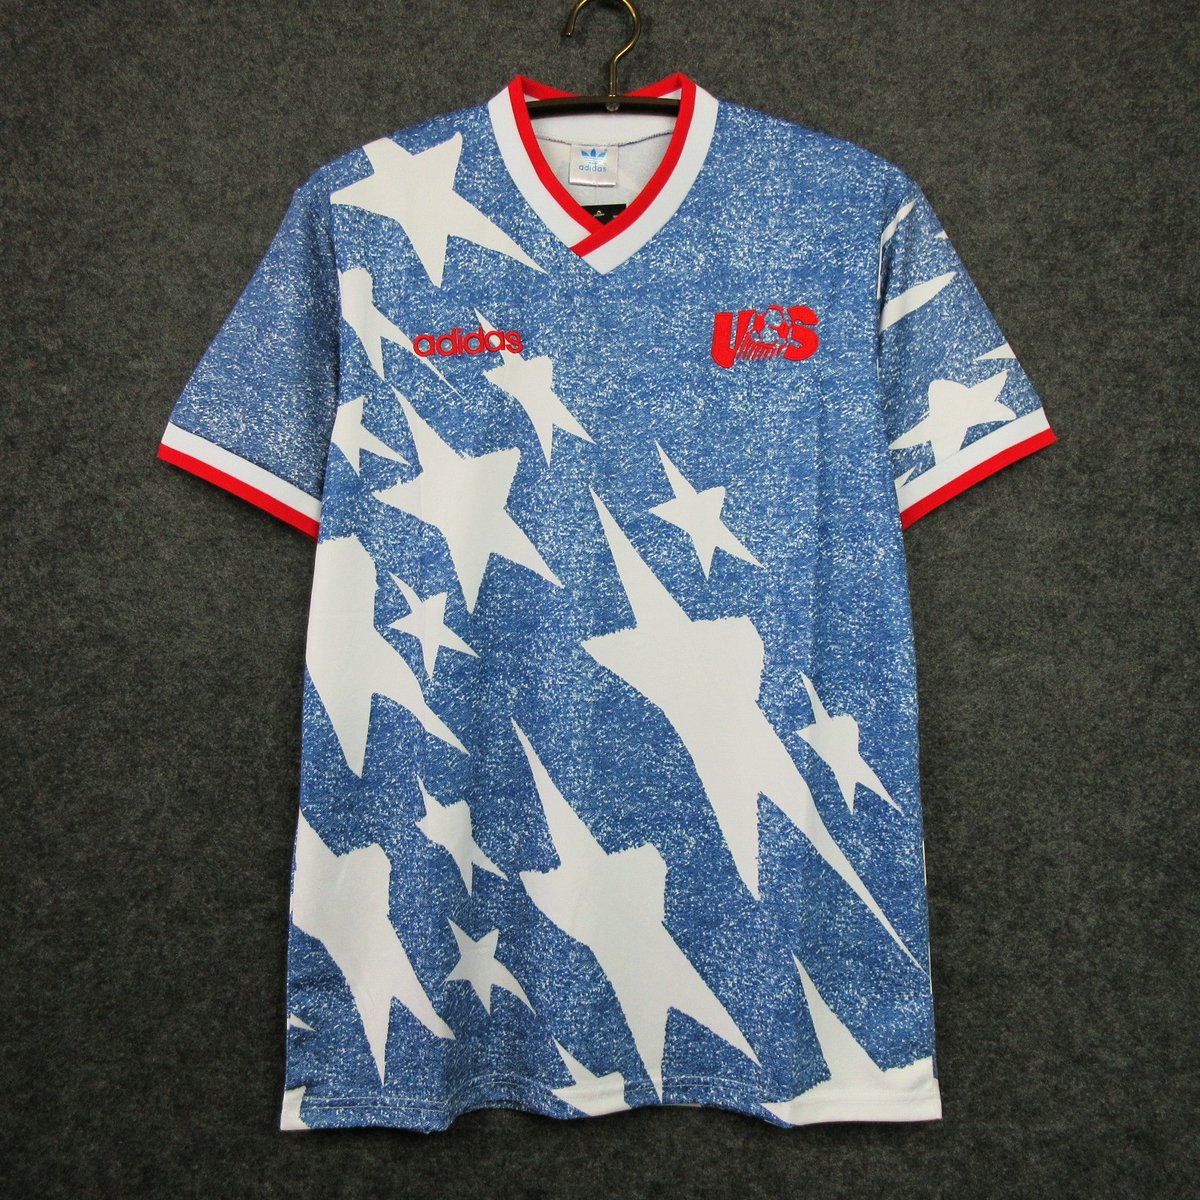 Original USA Home Jersey 1994 - M – RetrOriginalFootball